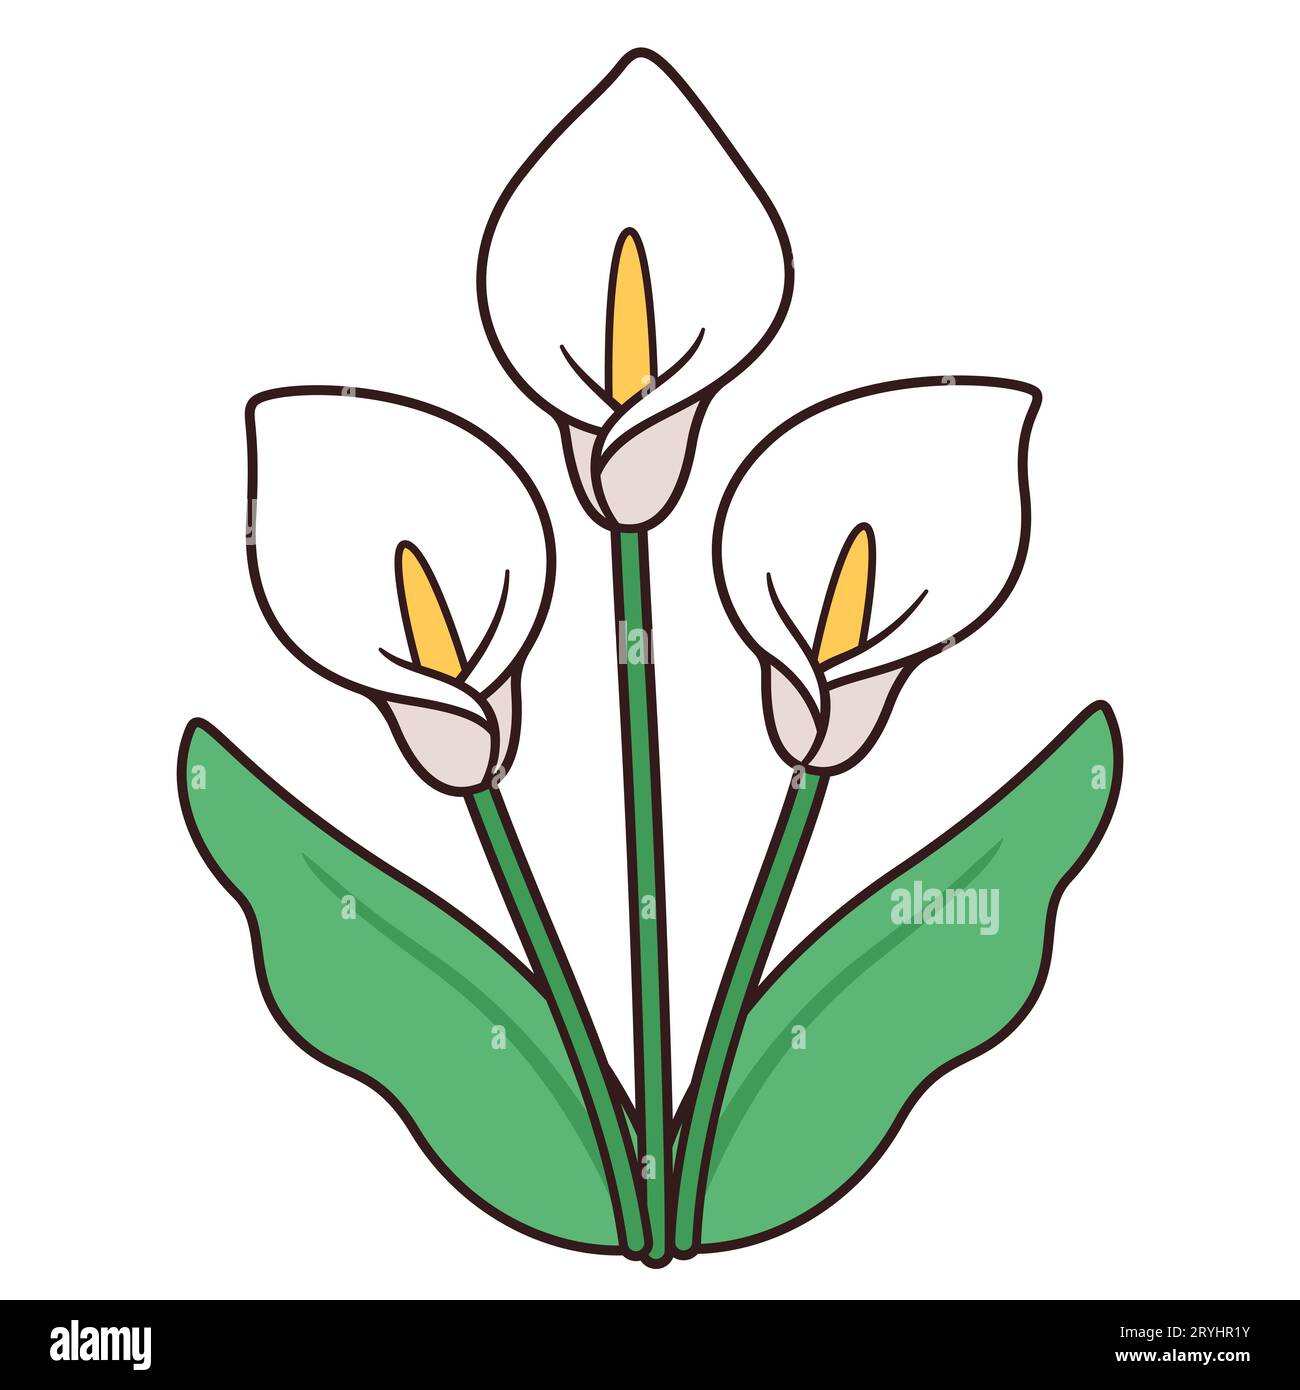 Dessin de bouquet de fleurs de lys Calla, design simple et élégant. Trois lis blancs avec des feuilles, illustration vectorielle isolée. Illustration de Vecteur